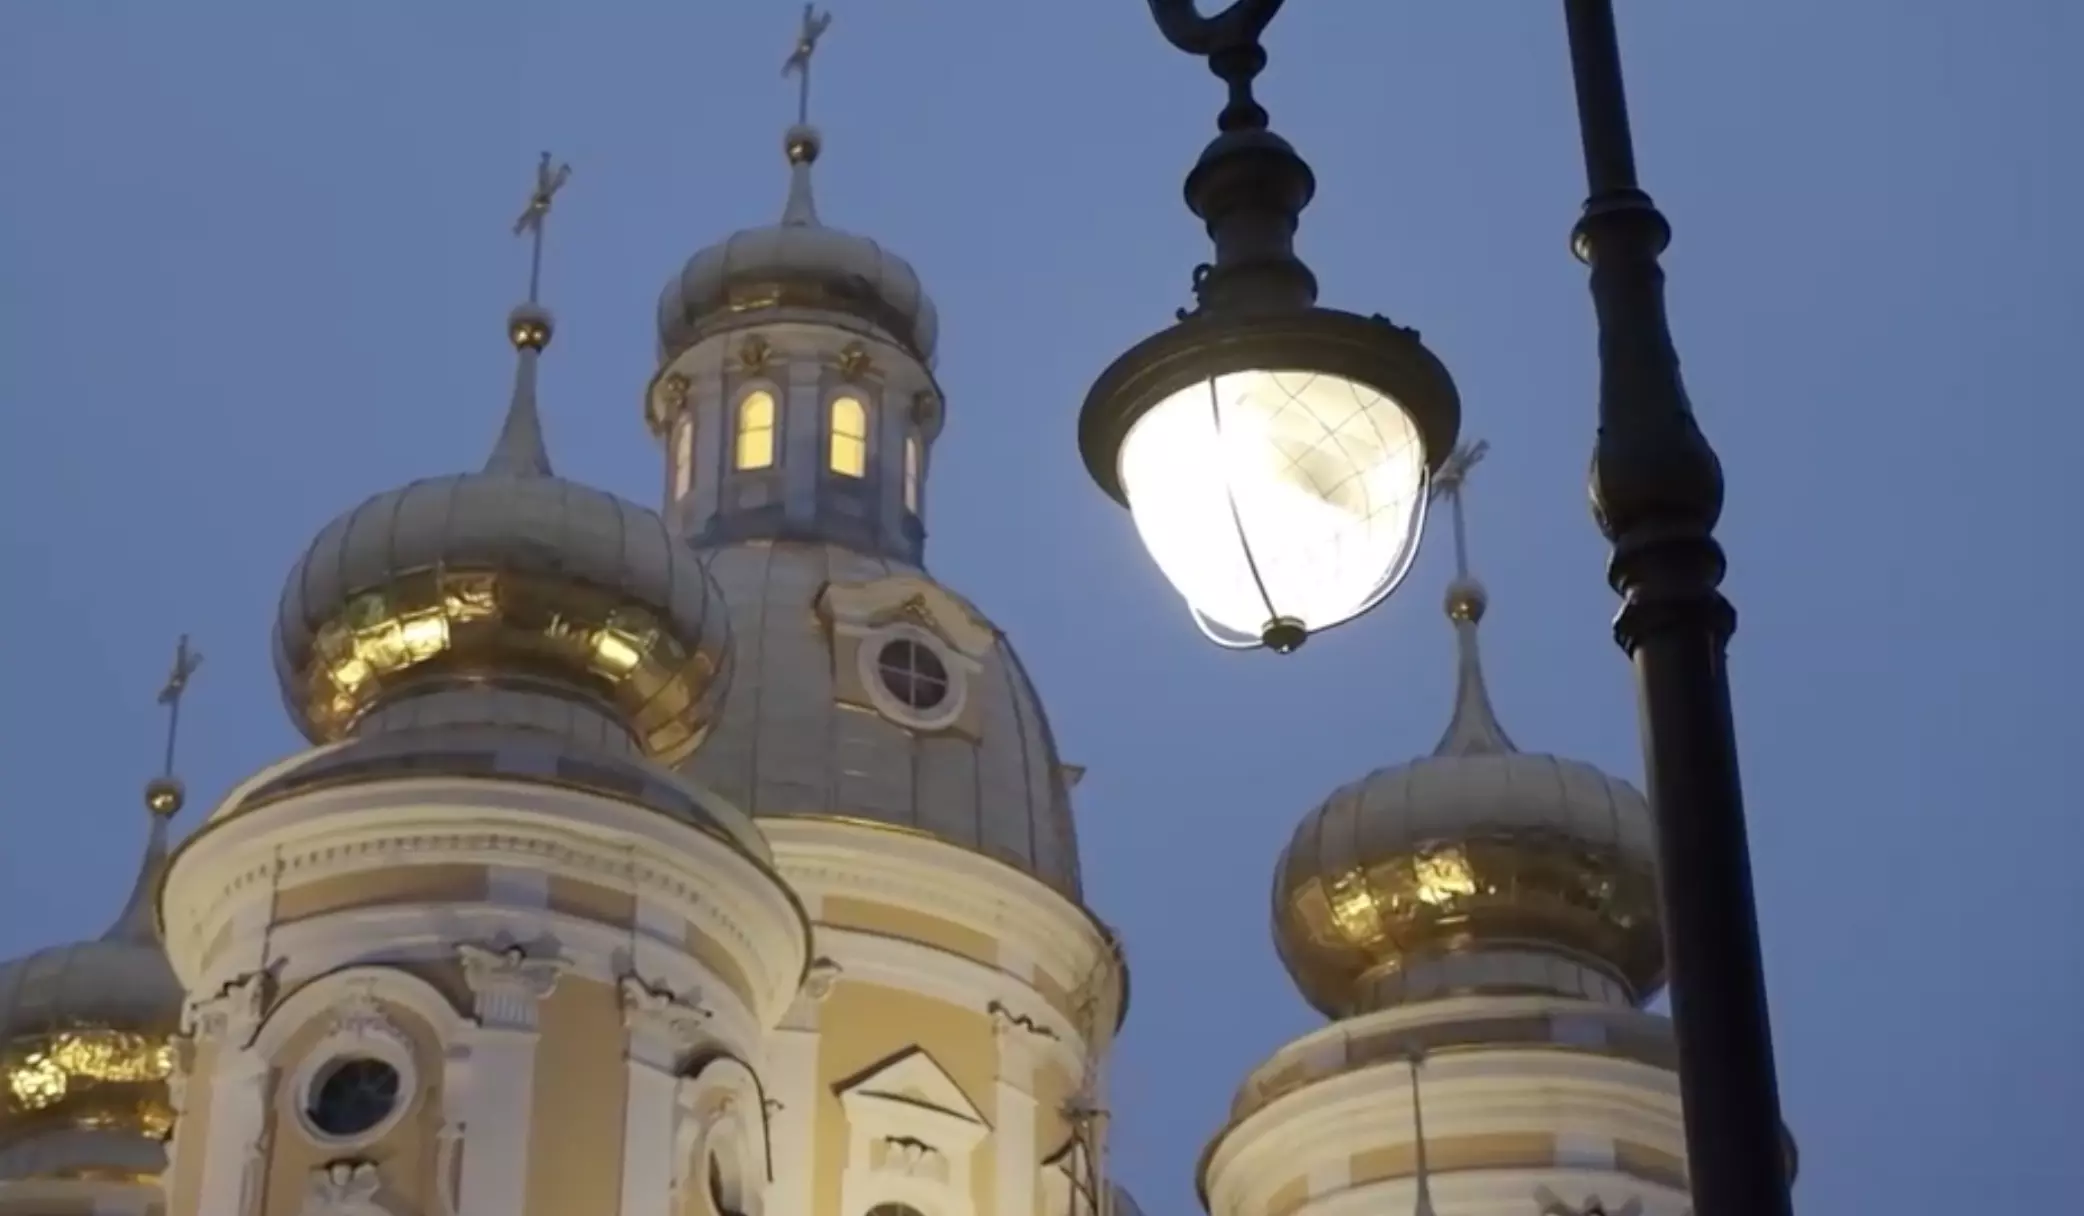 Инновационные светильники установили в Кузнечном переулке